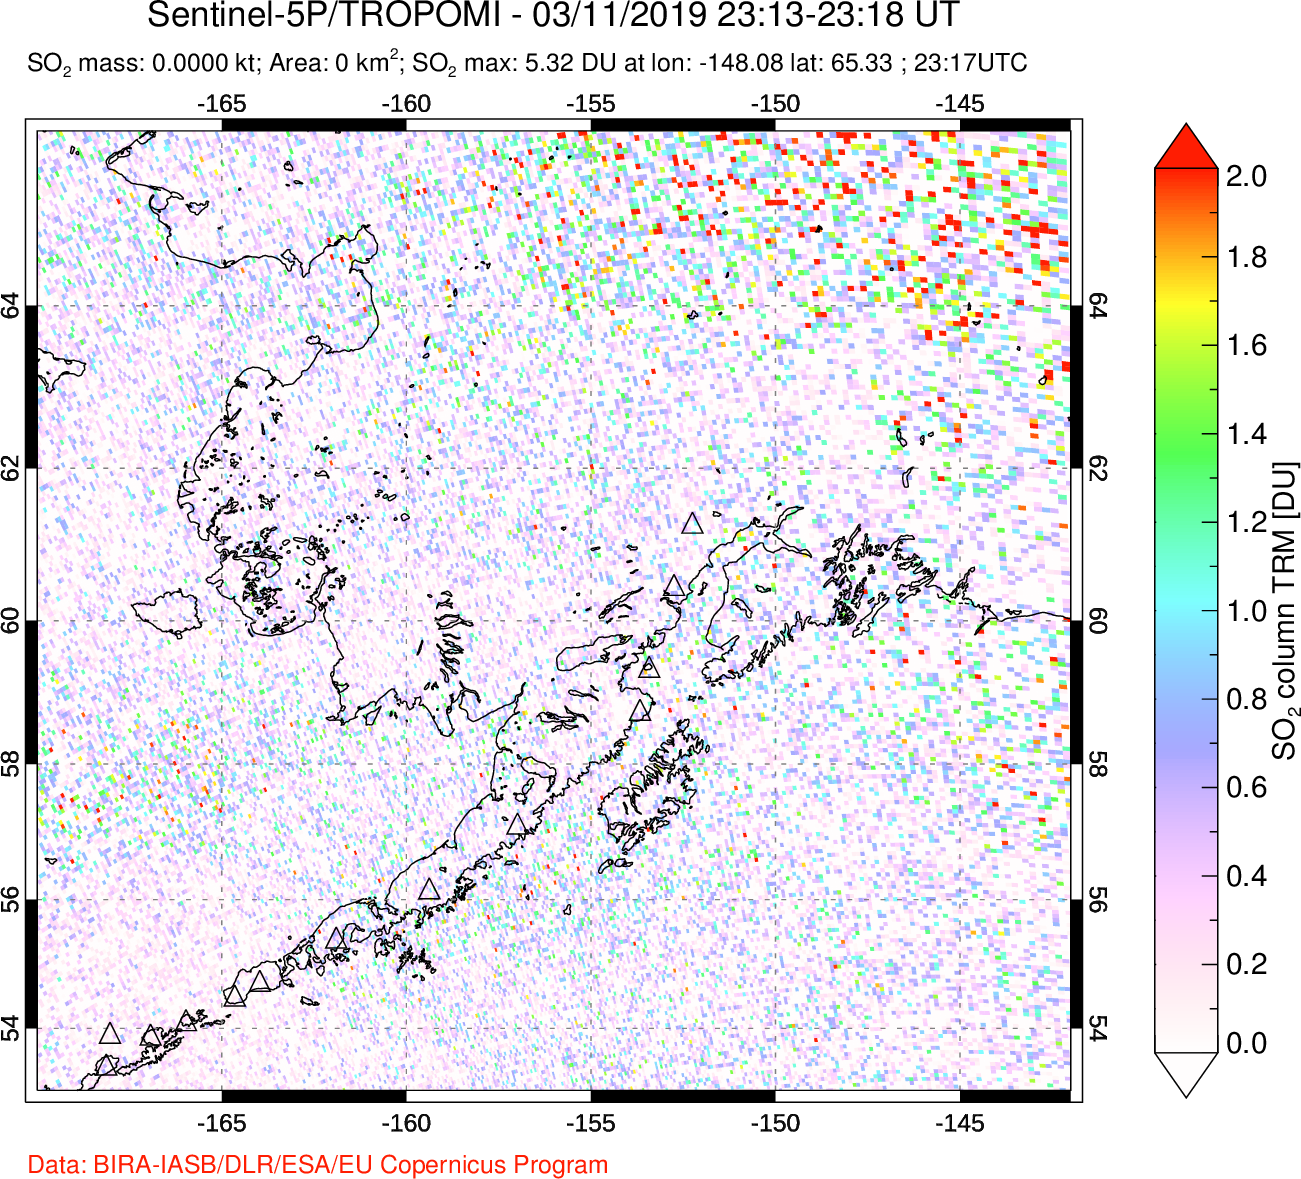 A sulfur dioxide image over Alaska, USA on Mar 11, 2019.